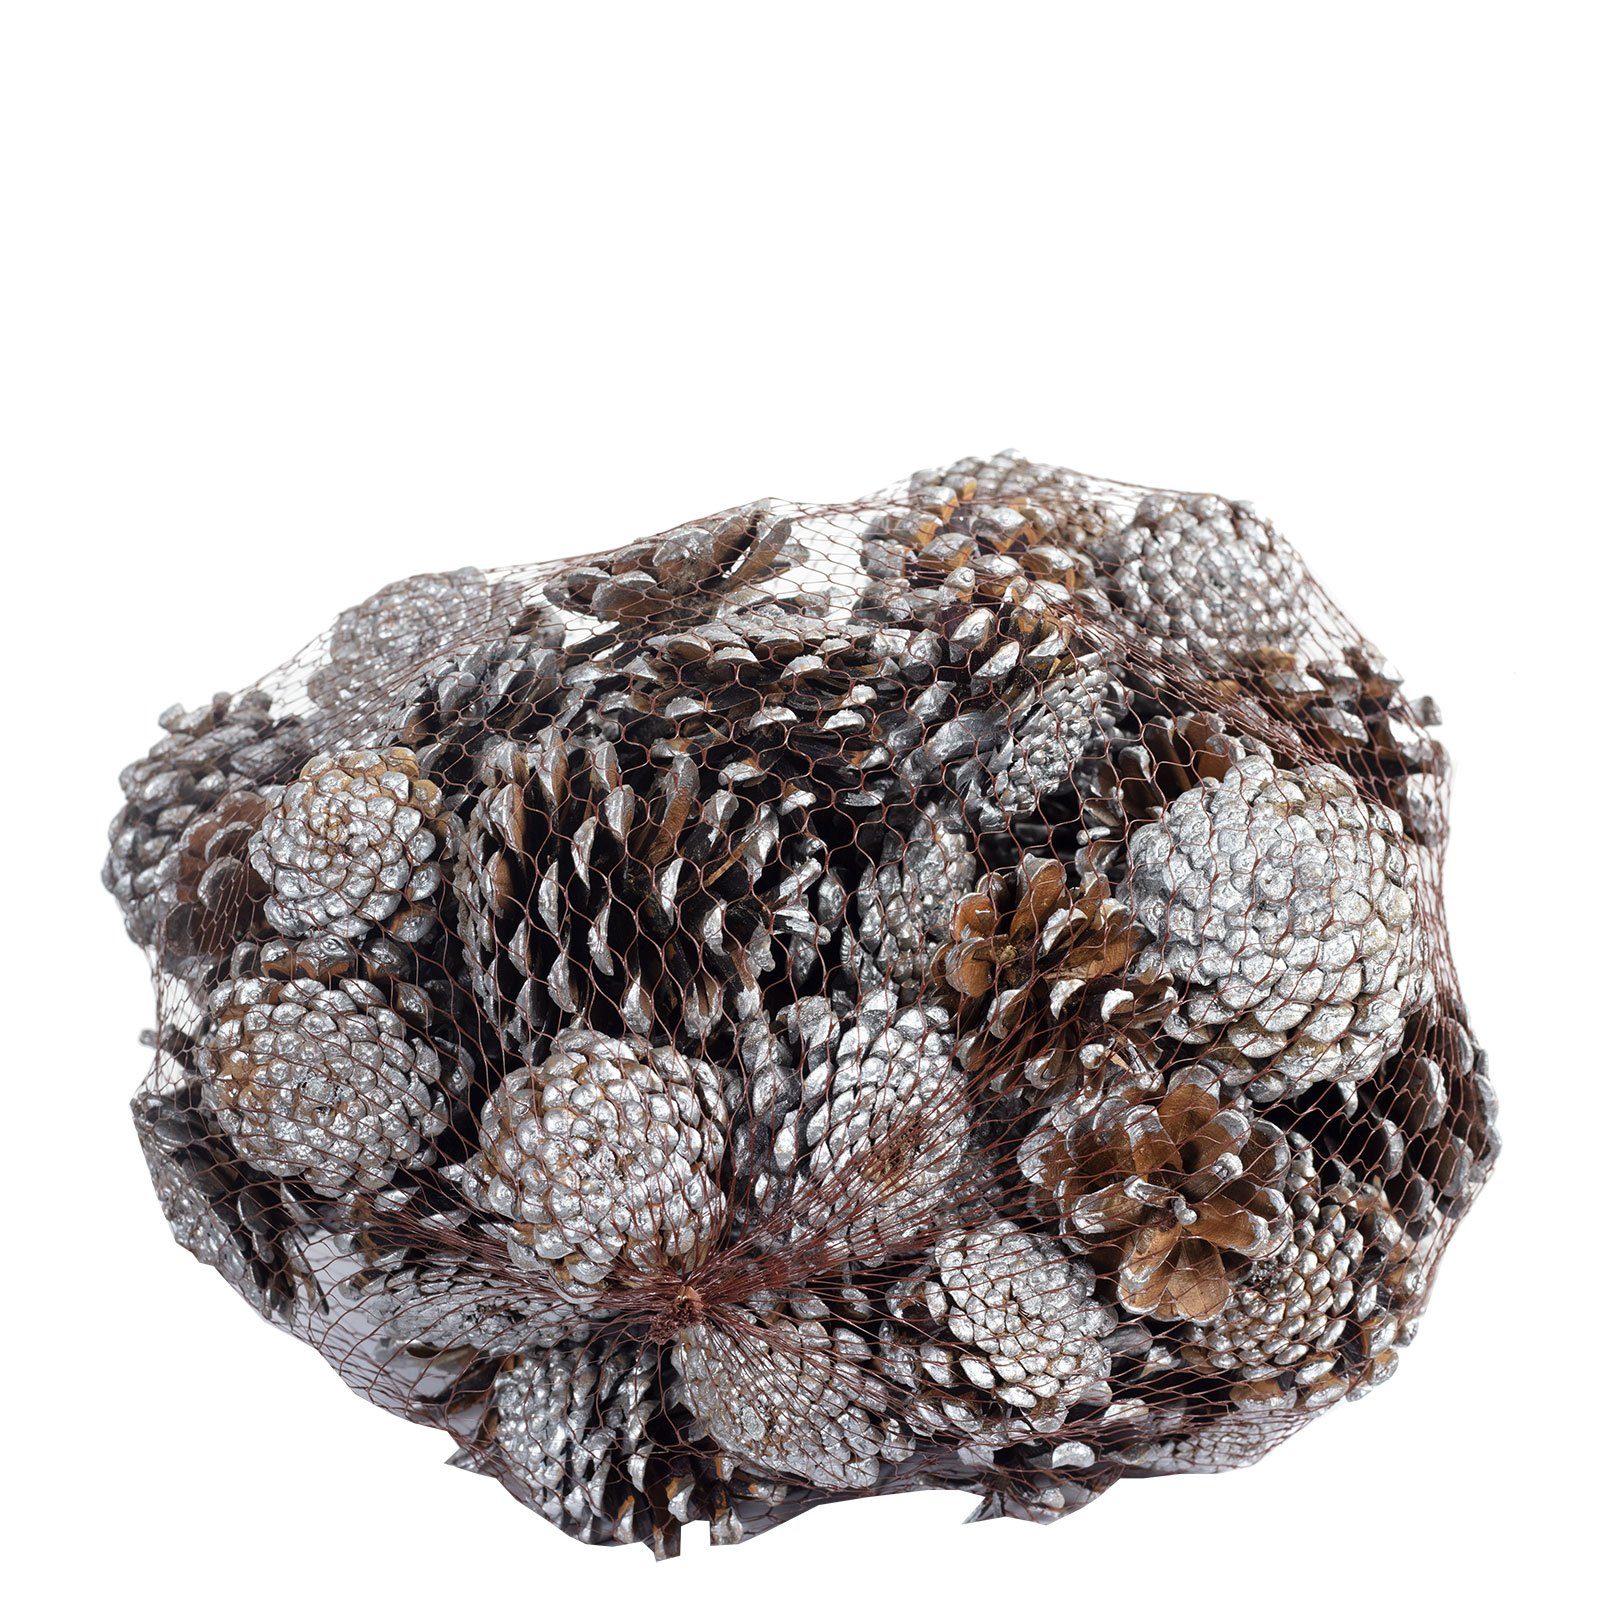 Trockenblume Schwarzkiefern - 1 kg im Netz - Länge ca. 5-8 cm - silber-tipped, Vosteen